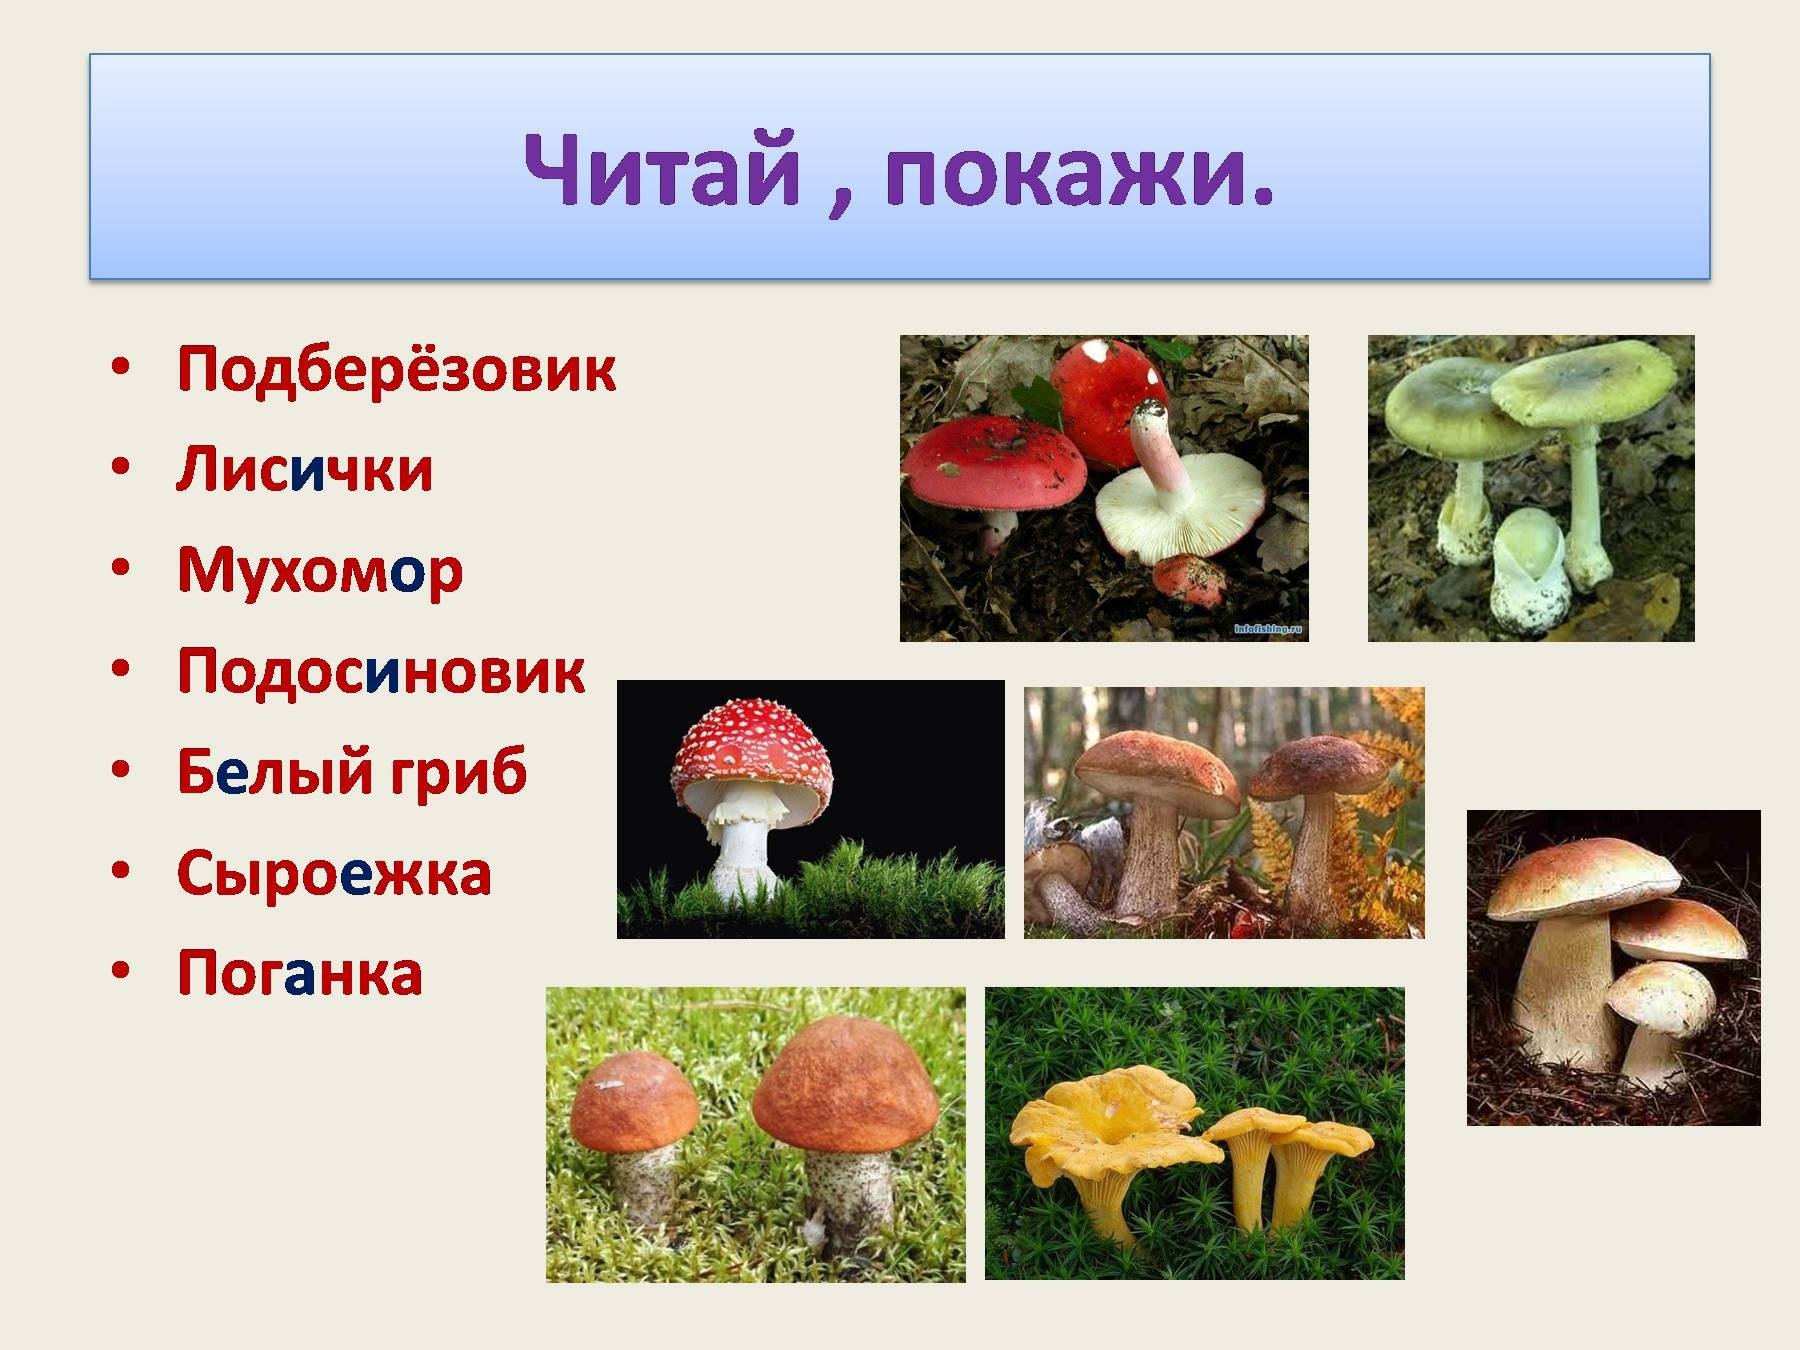 Активный образ жизни относится к грибам. Мухомор к какой группе грибов относится. К какой группе относится гриб мухомор. К какой группе относится белый гриб. К какой группе грибов относится белый гриб.